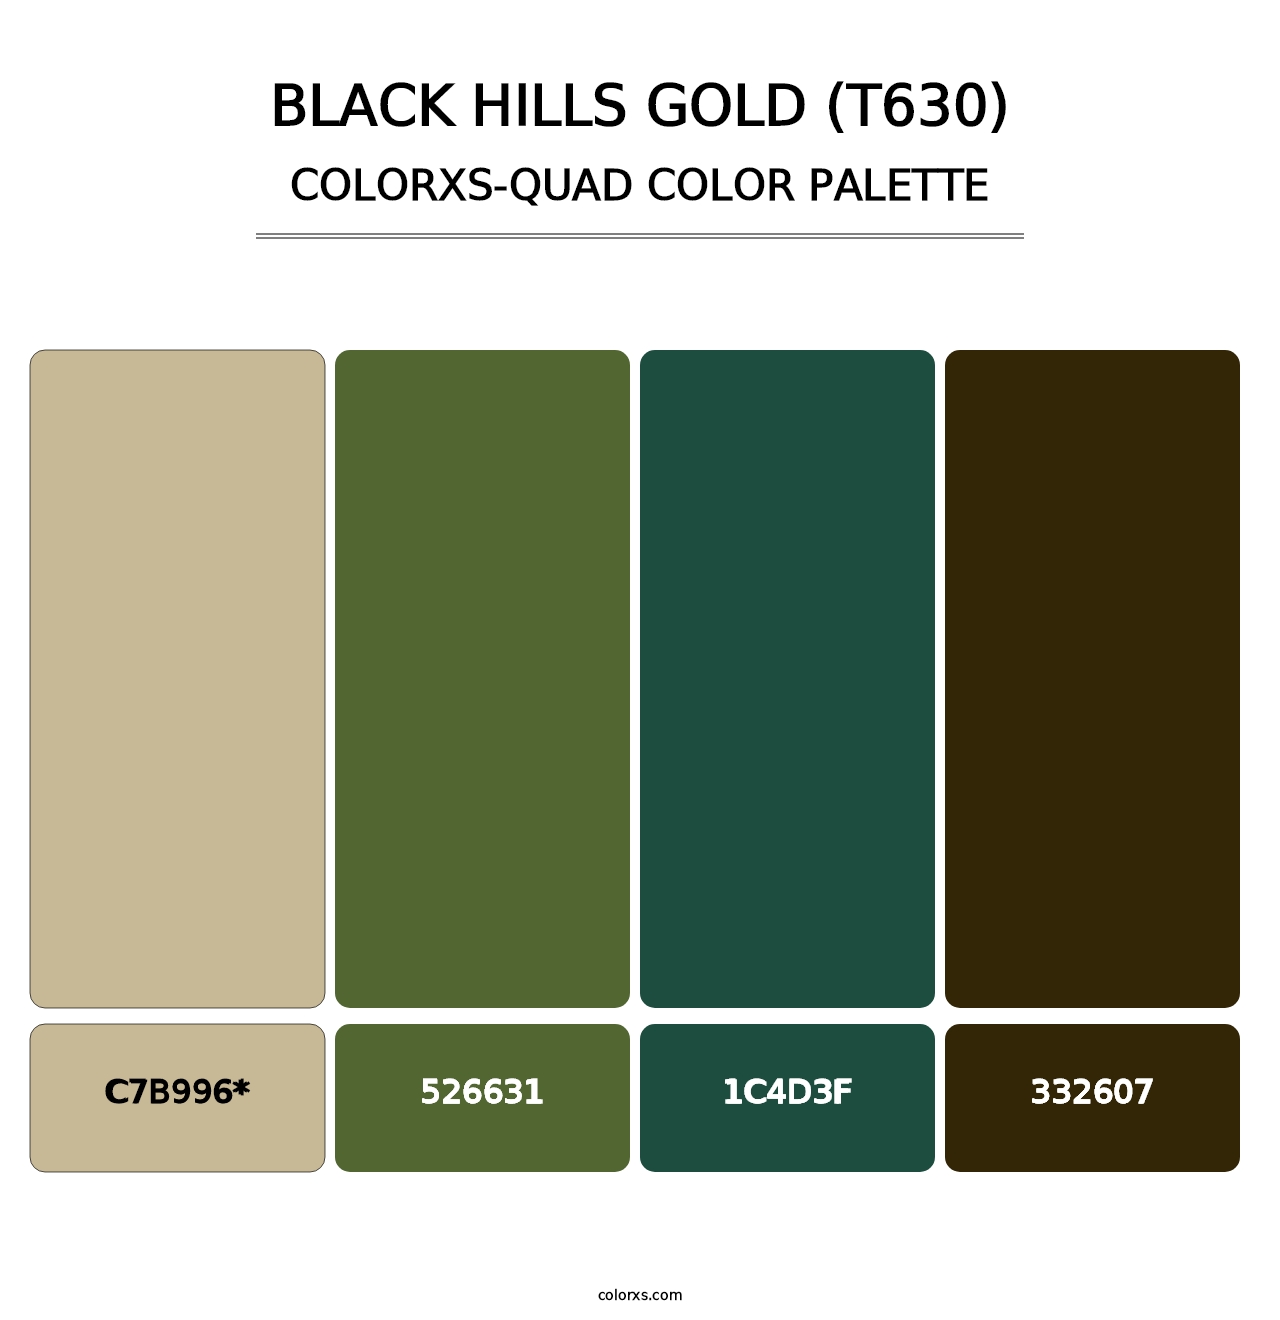 Black Hills Gold (T630) - Colorxs Quad Palette